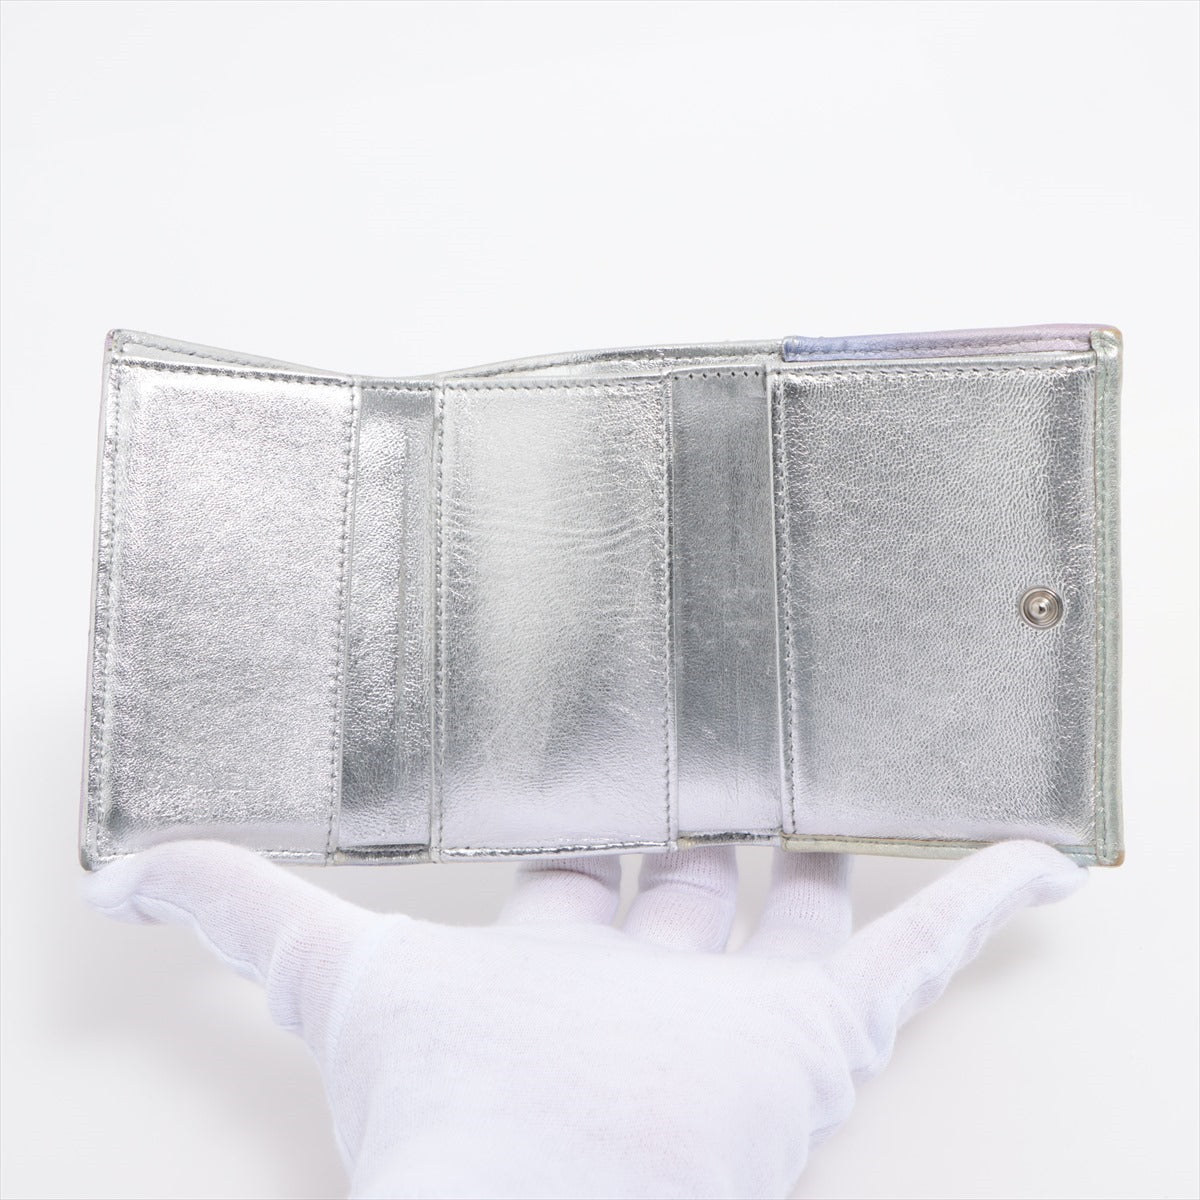 Chanel Matelasse Lambskin Compact Wallet metallic purple Silver Metal fittings 31st Green Gradation